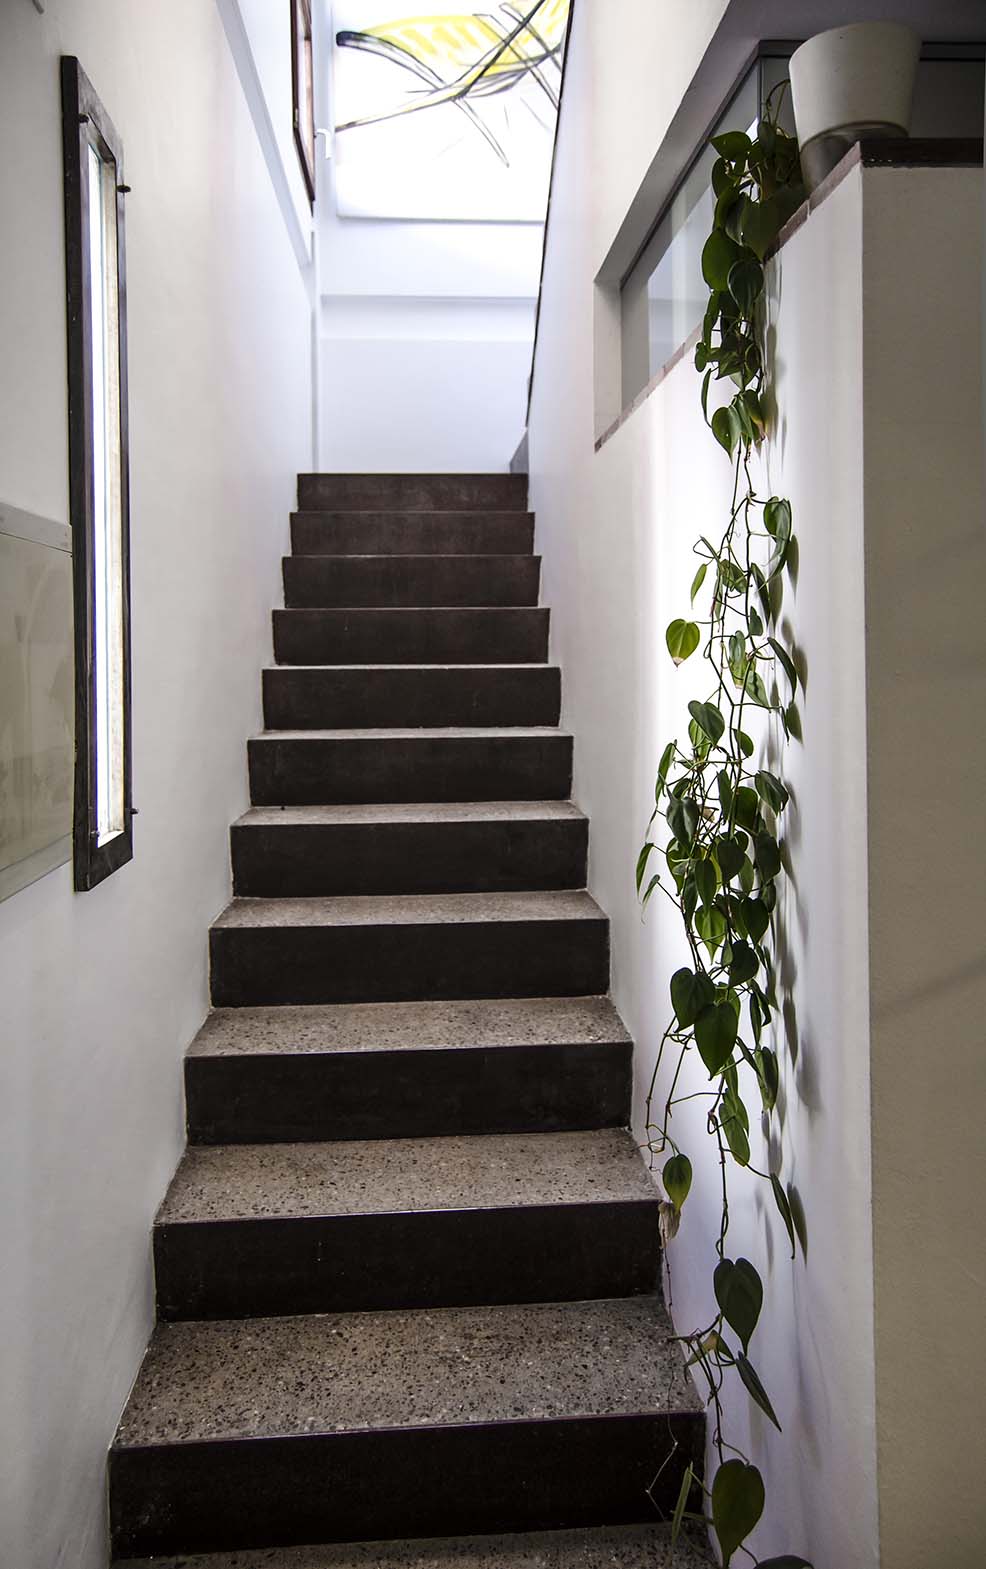 la escalera de acceso a la primera planta. Desde ahí recibe luz natural supletoria la habitación de invitados